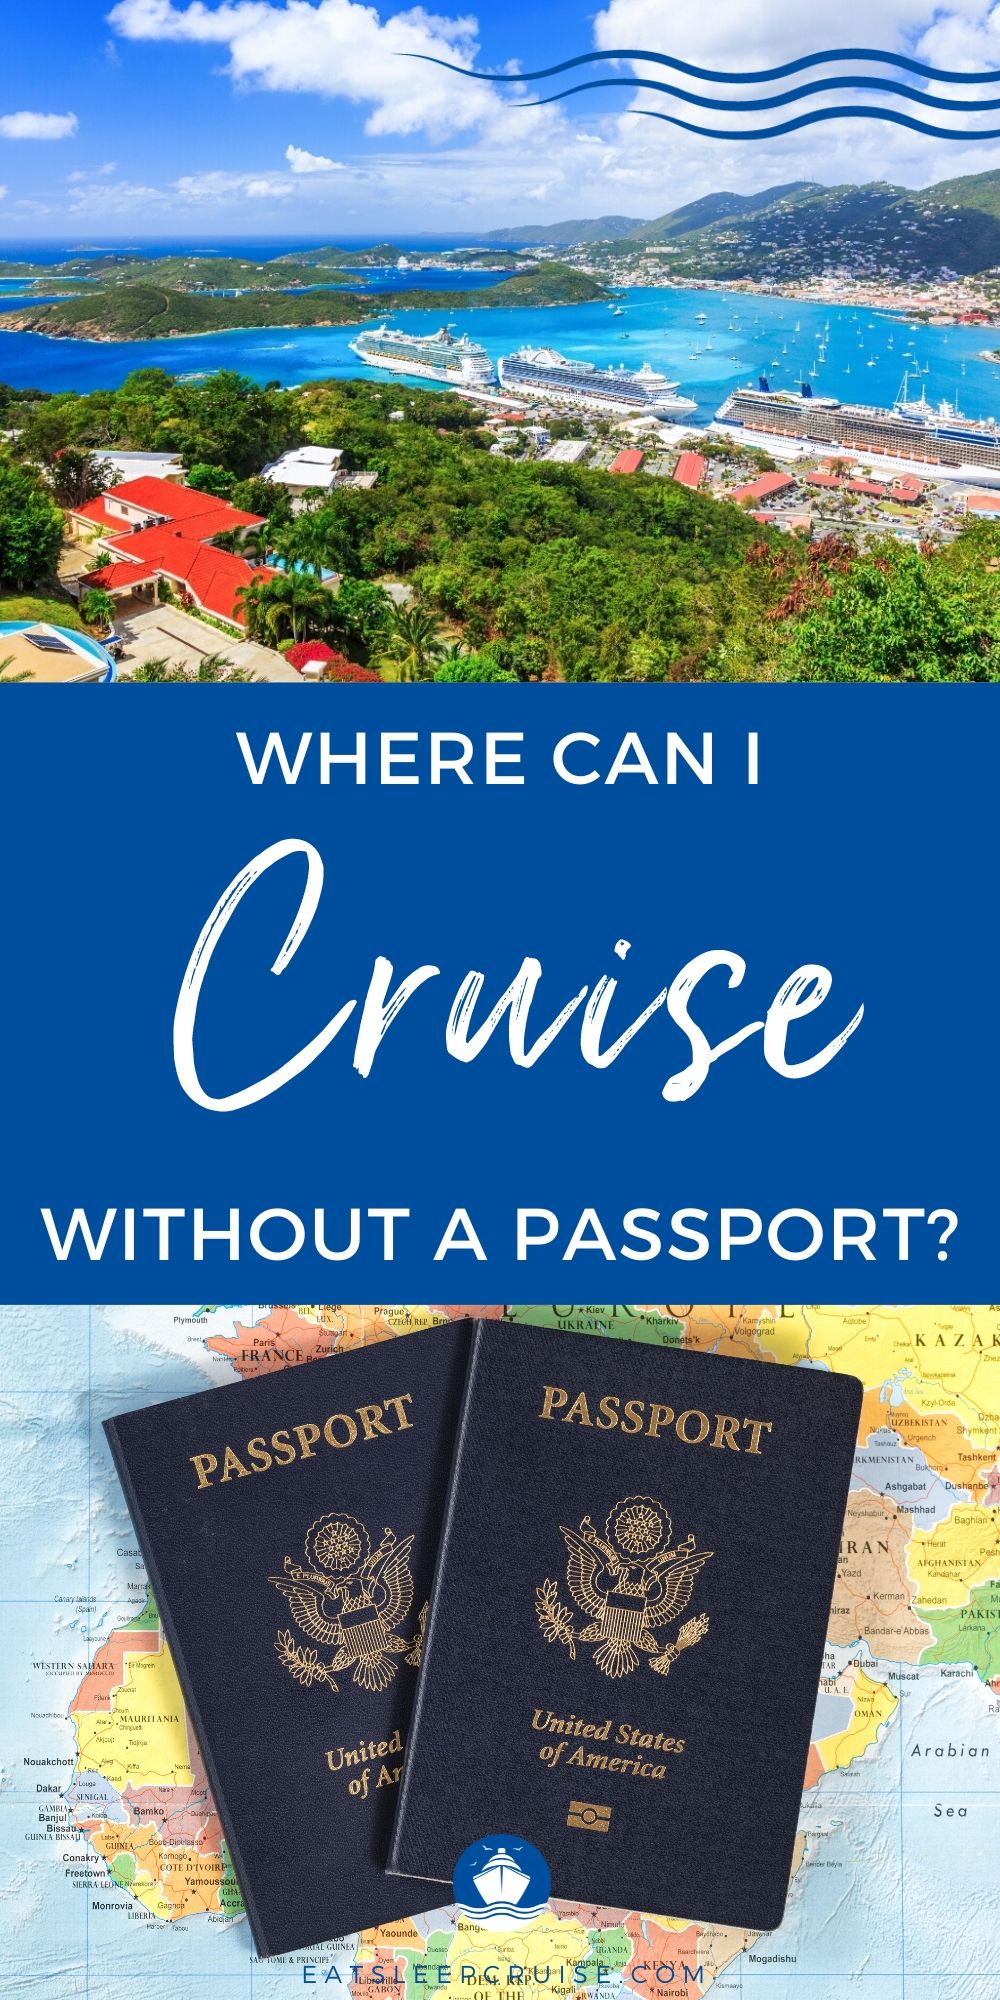 cheap cruises without passport